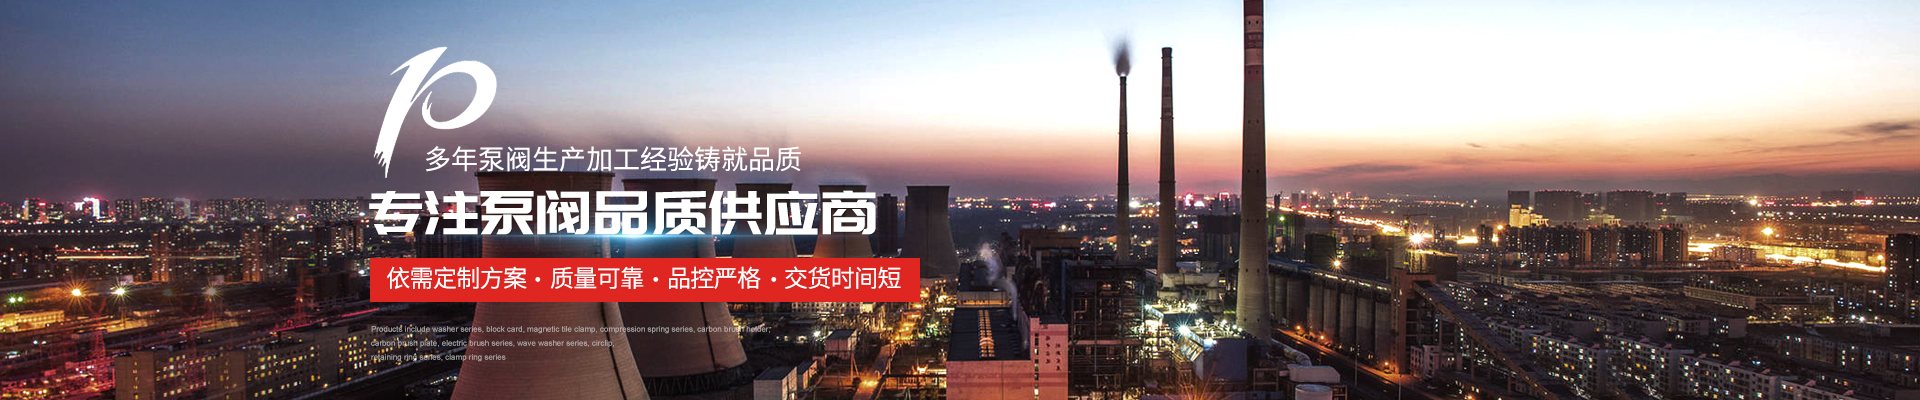 磁力泵廠家 - 上海高適泵閥有限公司